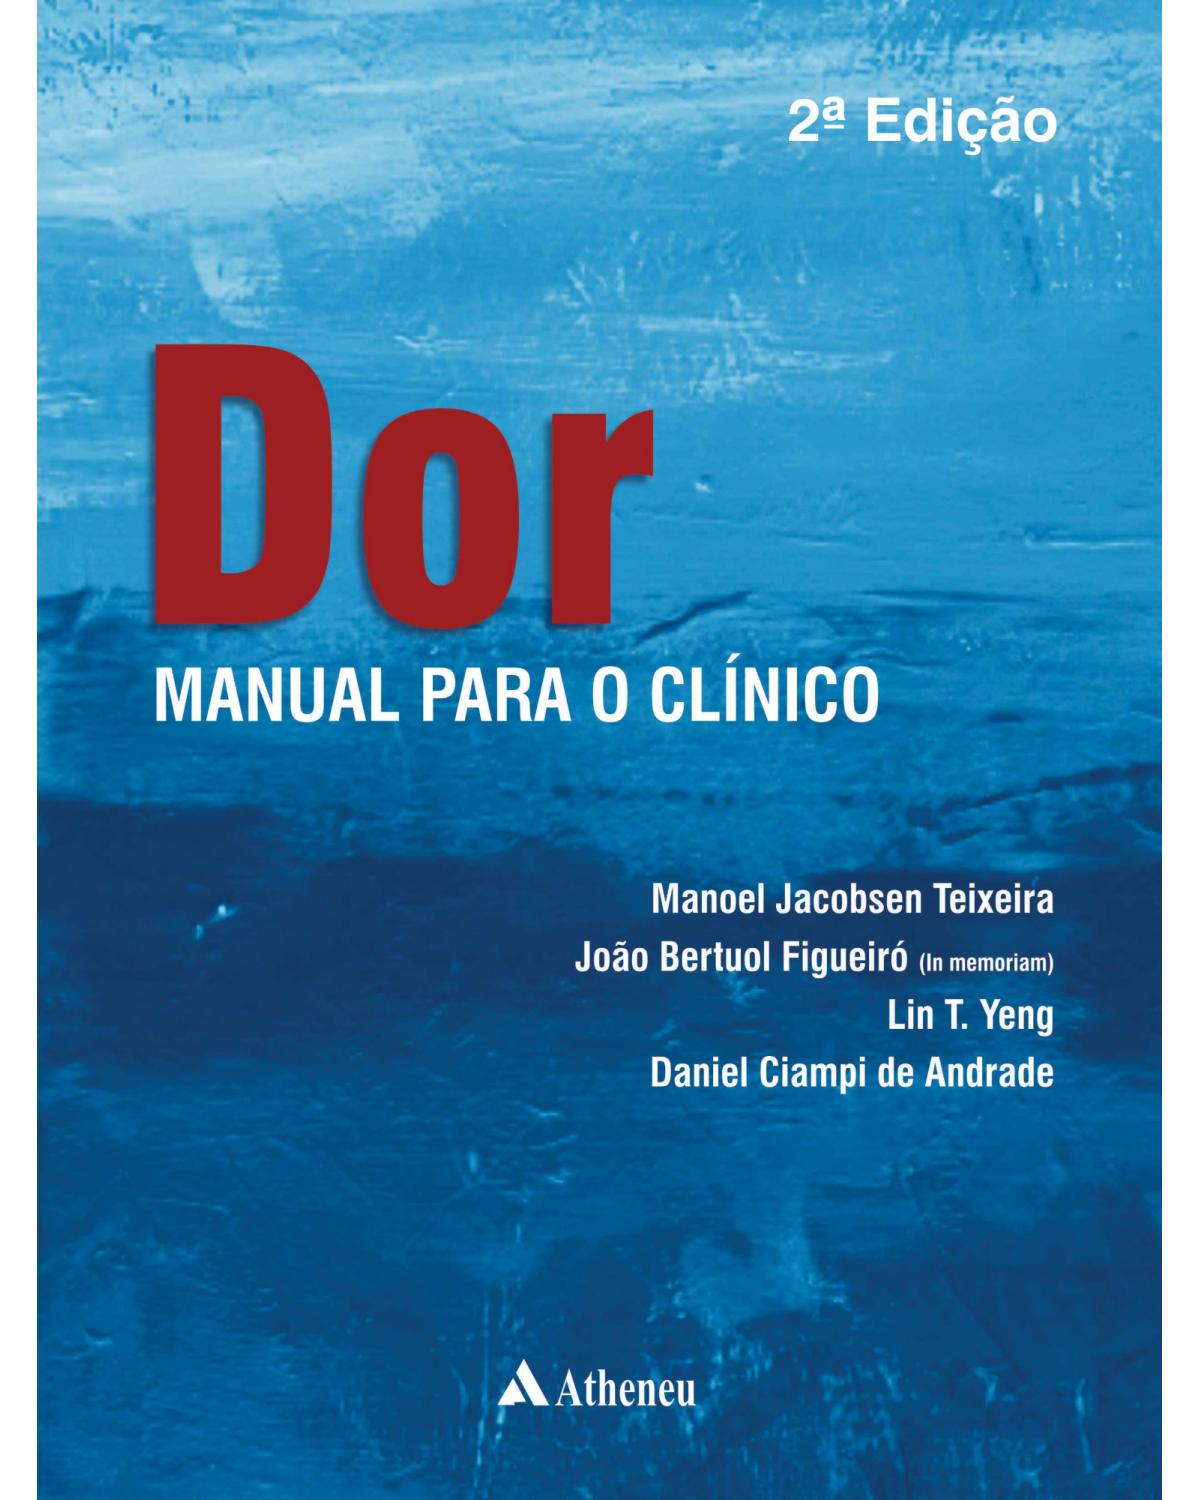 Dor - Manual para o clínico - 2ª Edição | 2018